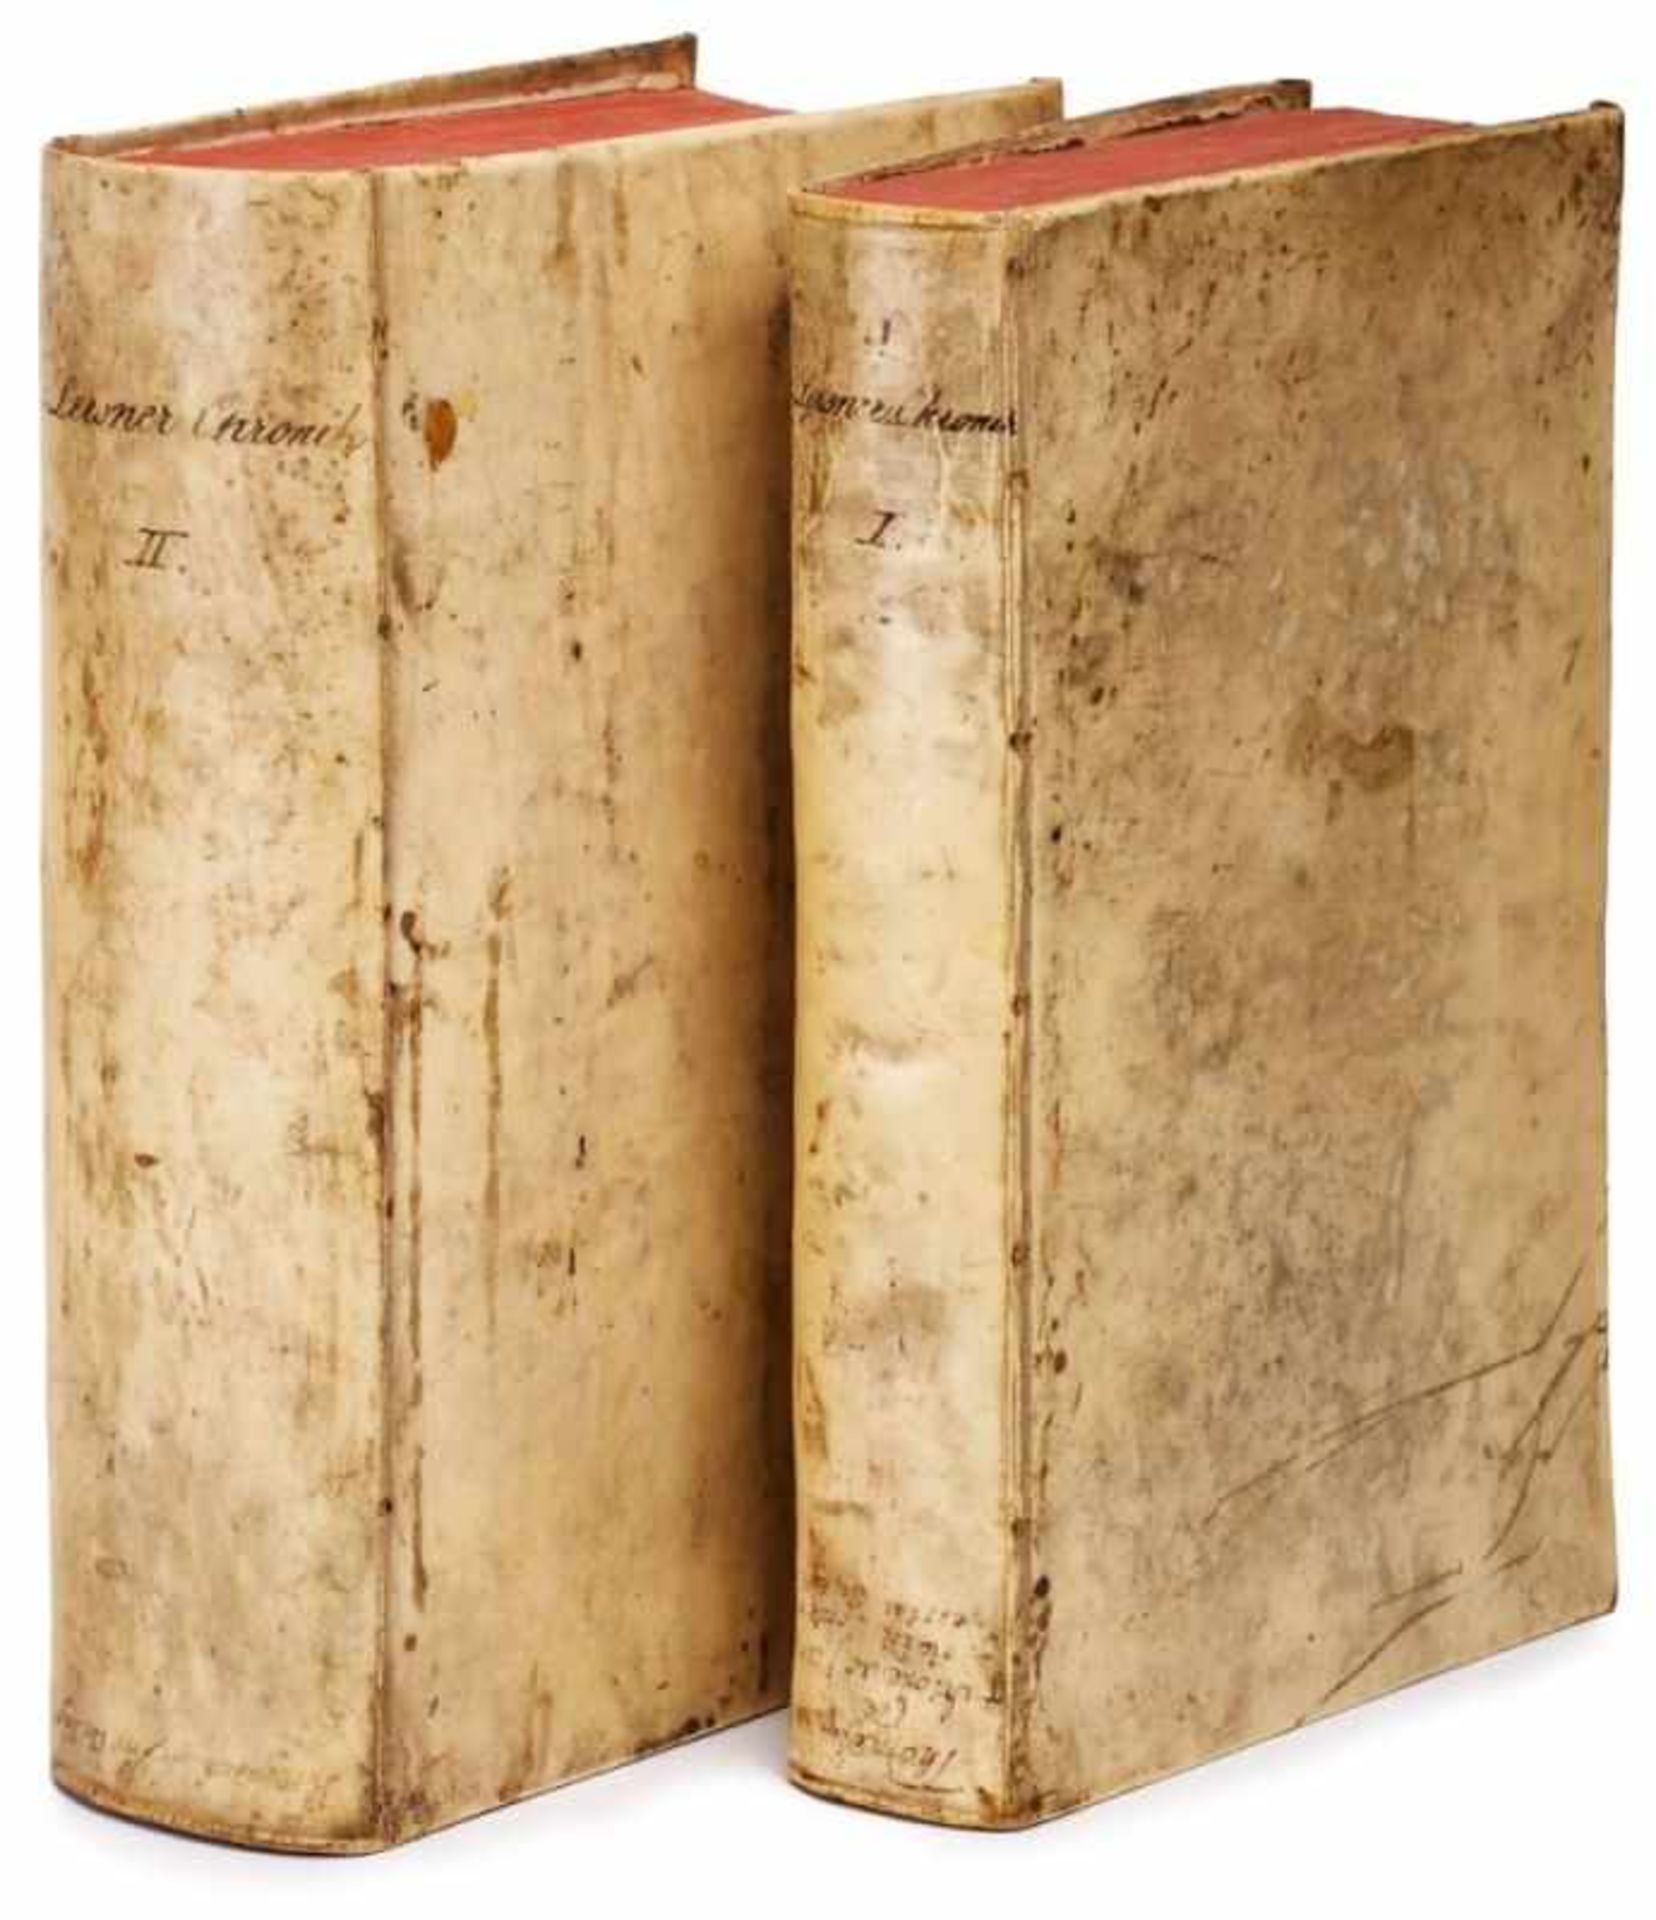 2 Bände Lersner Chronik (1706 - 1734)Schweinslederbände der Zeit, nicht kollationiert, mit dem - Bild 6 aus 6